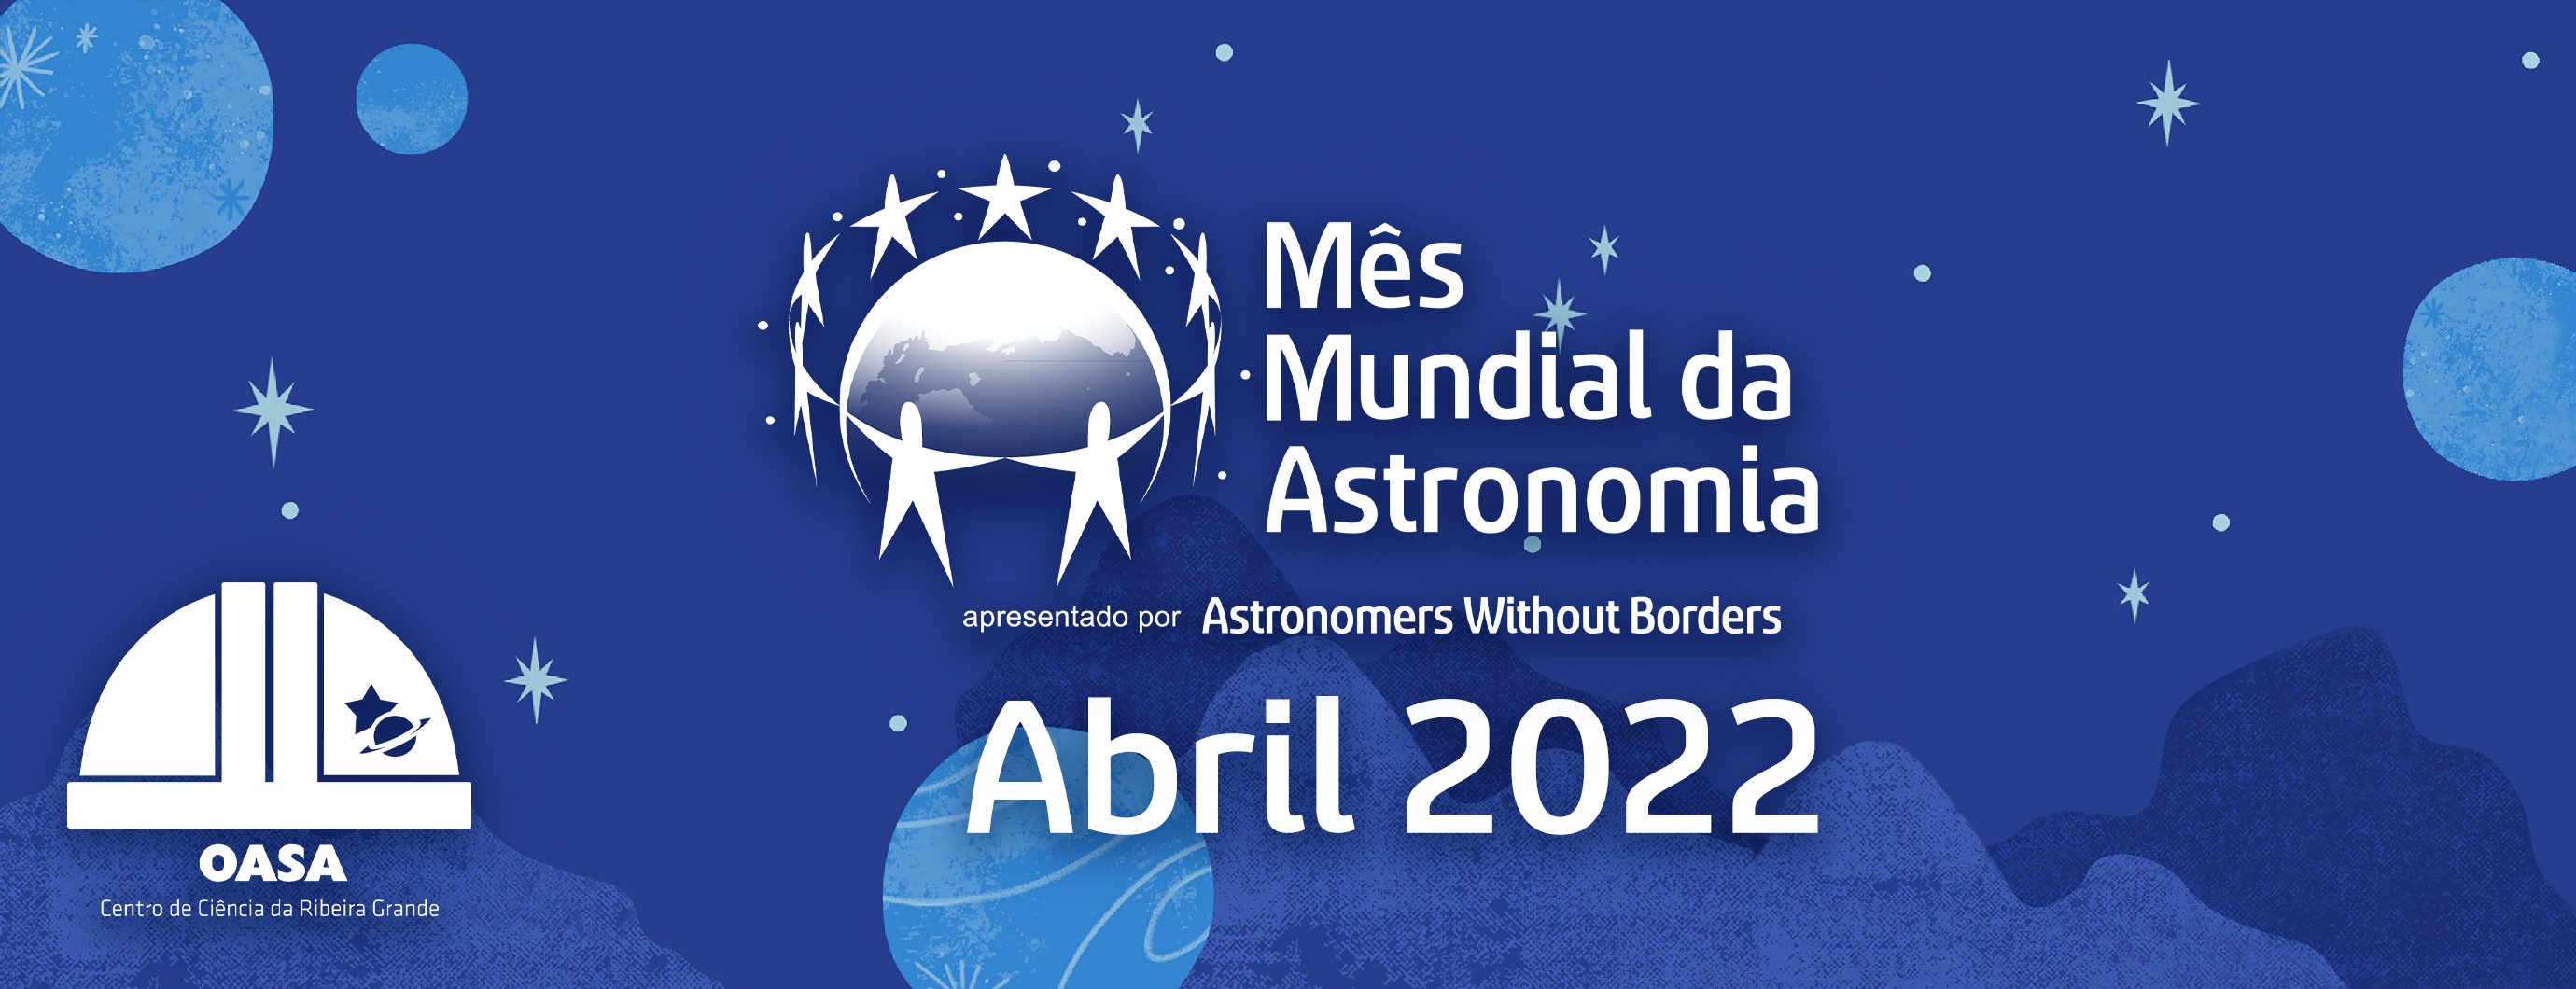 Mês Mundial da Astronomia 2022 | Observatório Astronómico de Santana - Açores